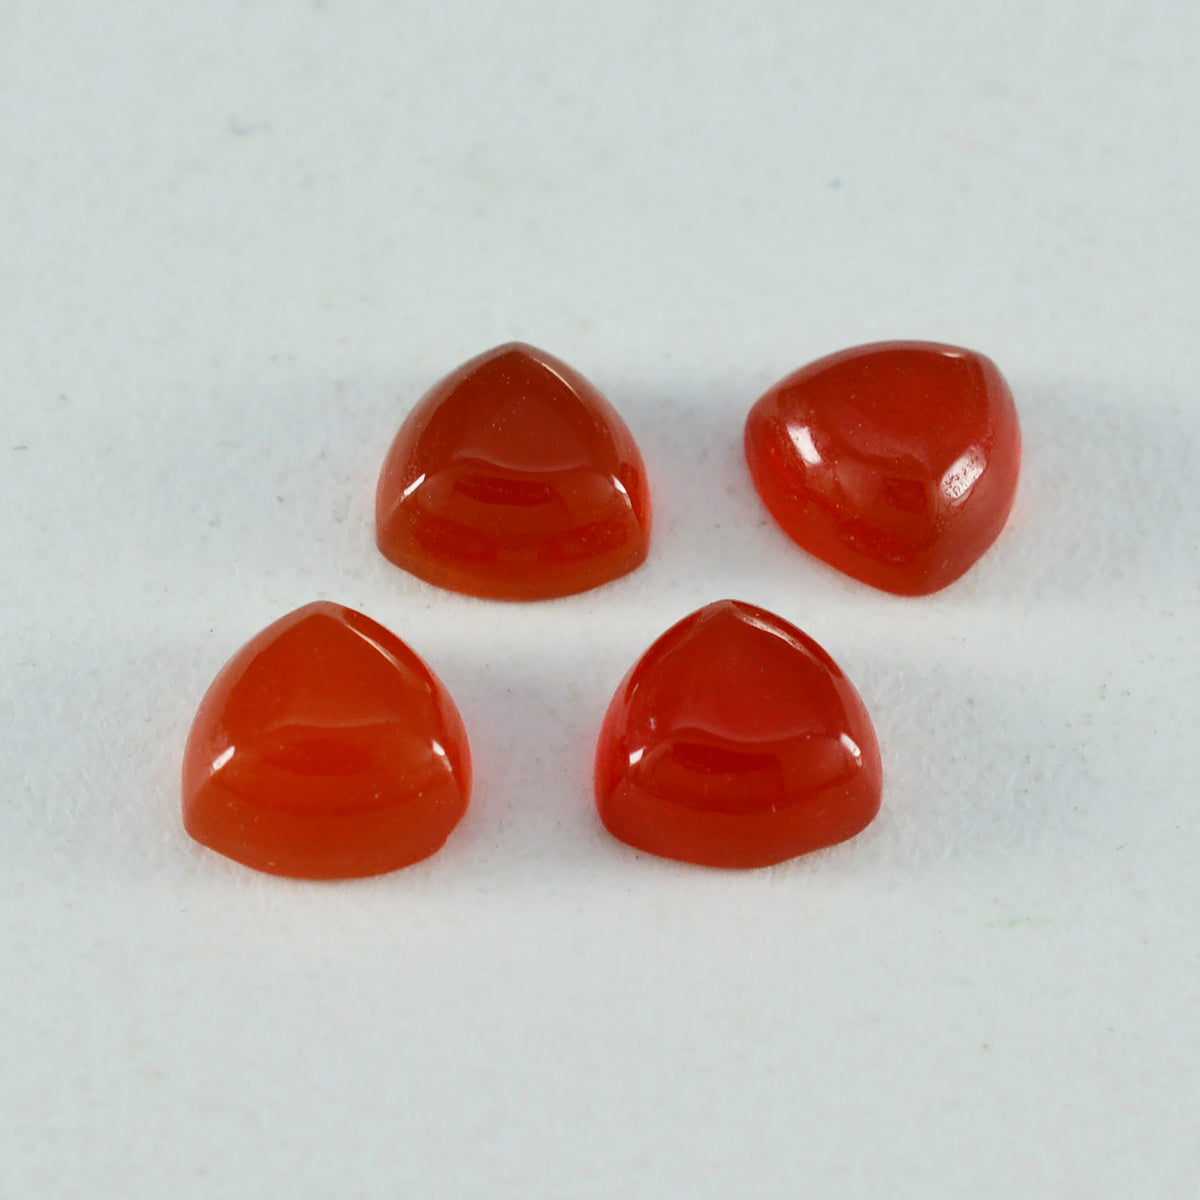 riyogems 1 шт. красный оникс кабошон 10x10 мм форма триллион отличное качество свободный драгоценный камень